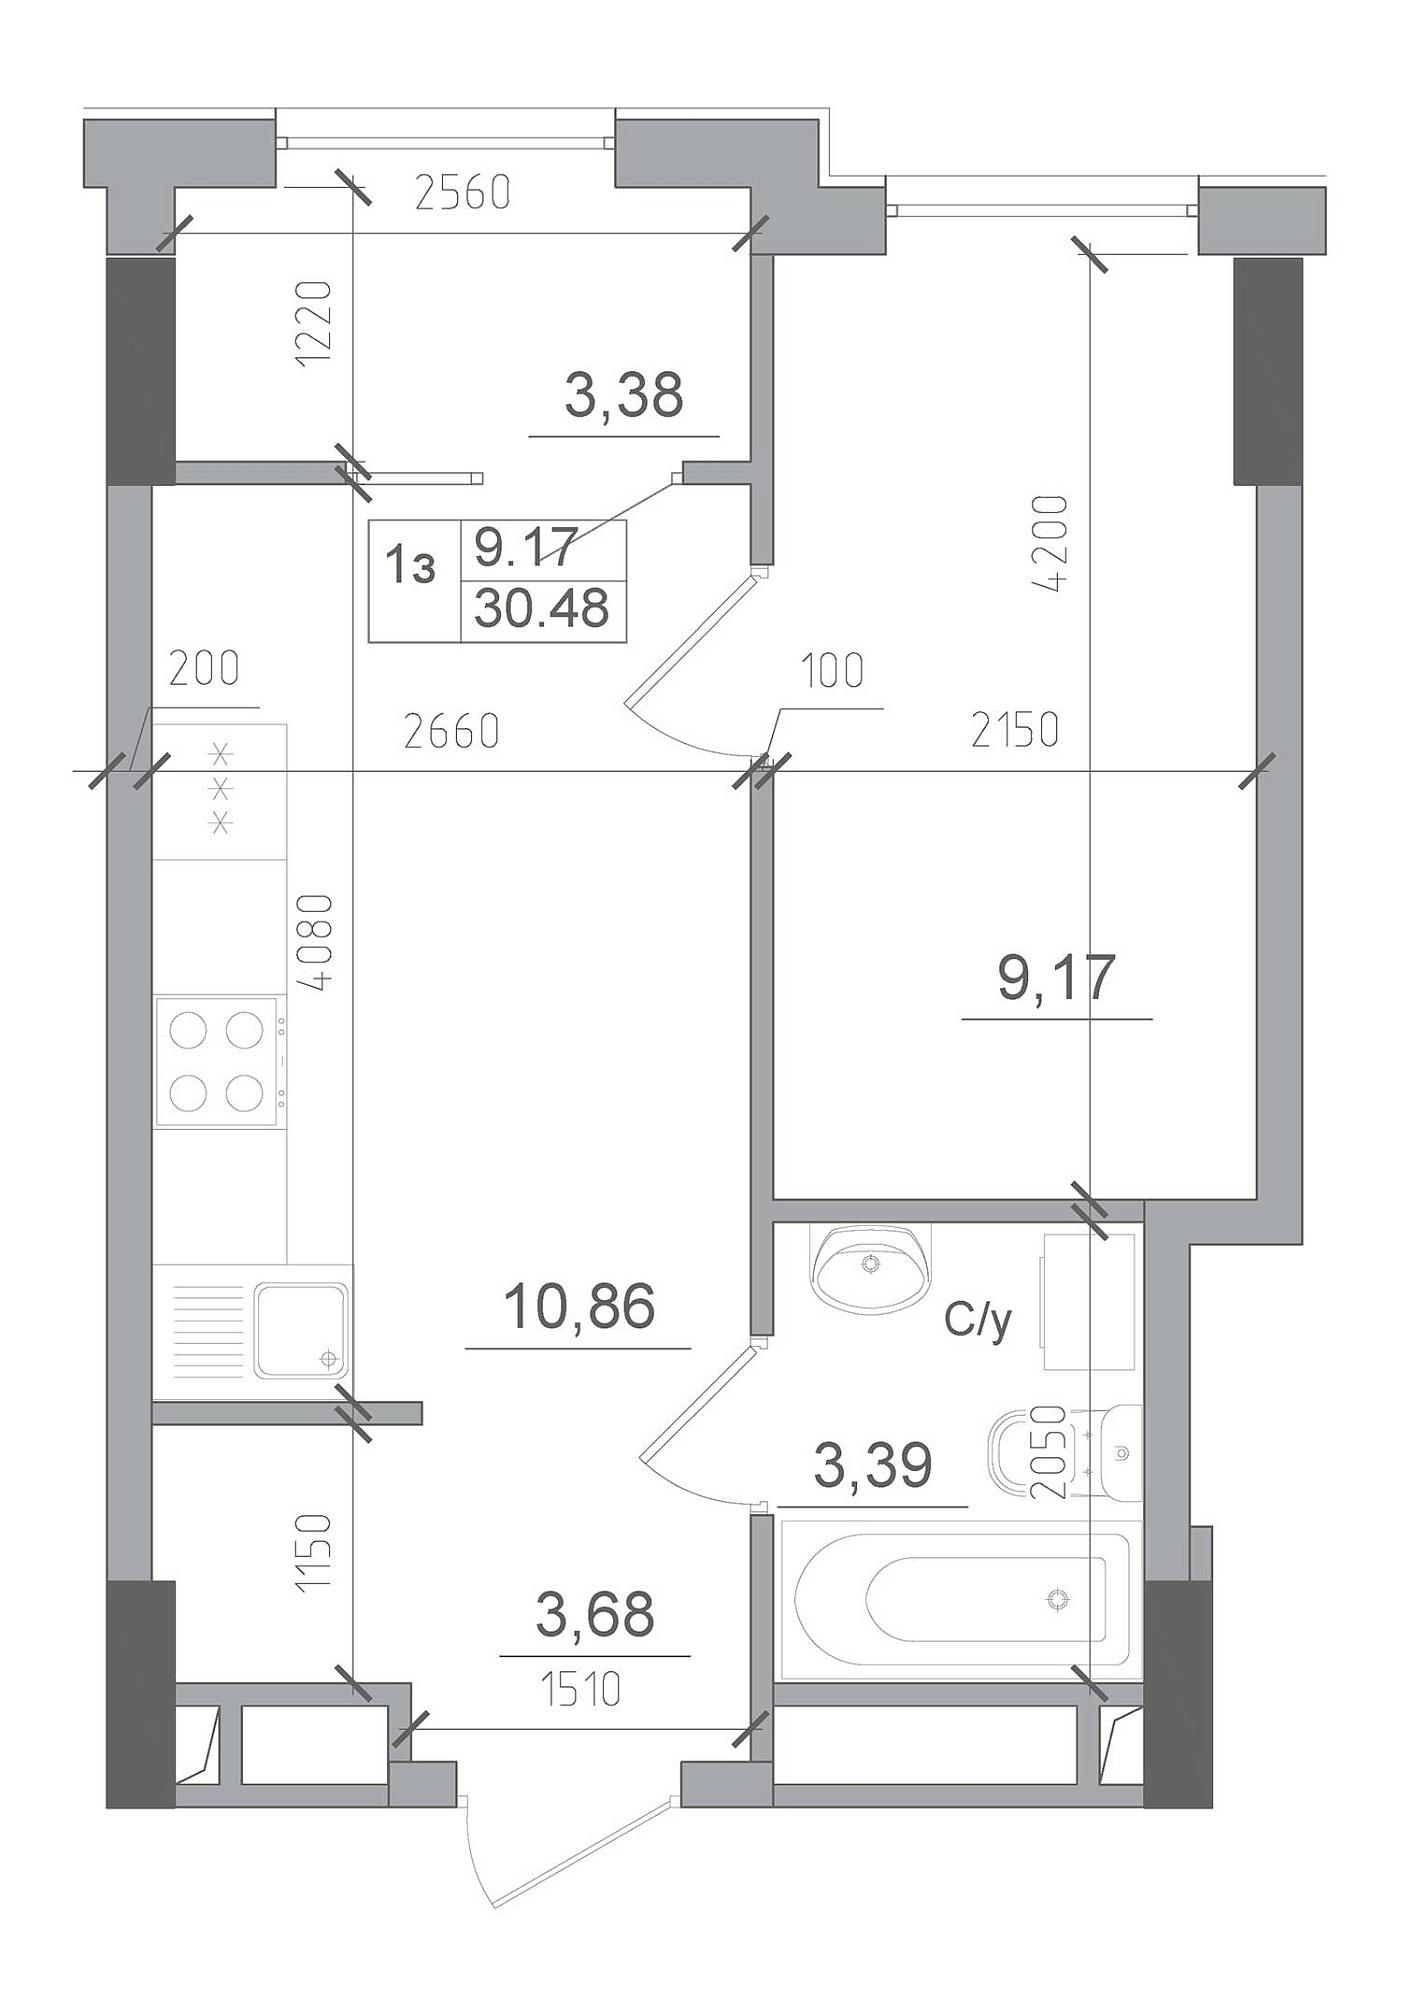 Планування 1-к квартира площею 30.48м2, AB-22-08/00013.